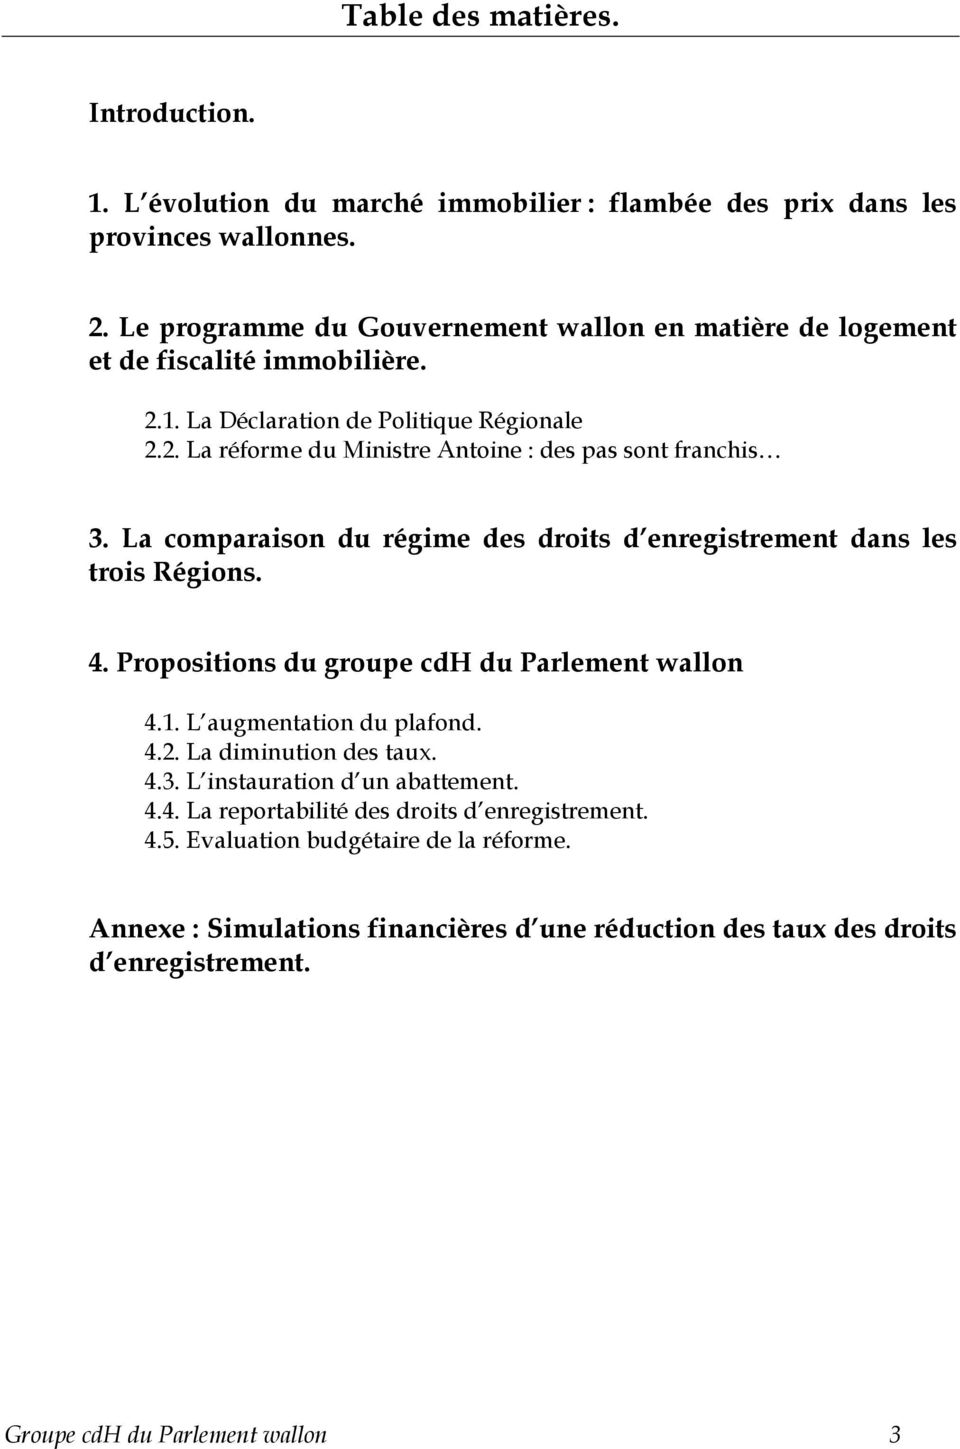 La comparaison du régime des droits d enregistrement dans les trois Régions. 4. Propositions du groupe cdh du Parlement wallon 4.1. L augmentation du plafond. 4.2. La diminution des taux.